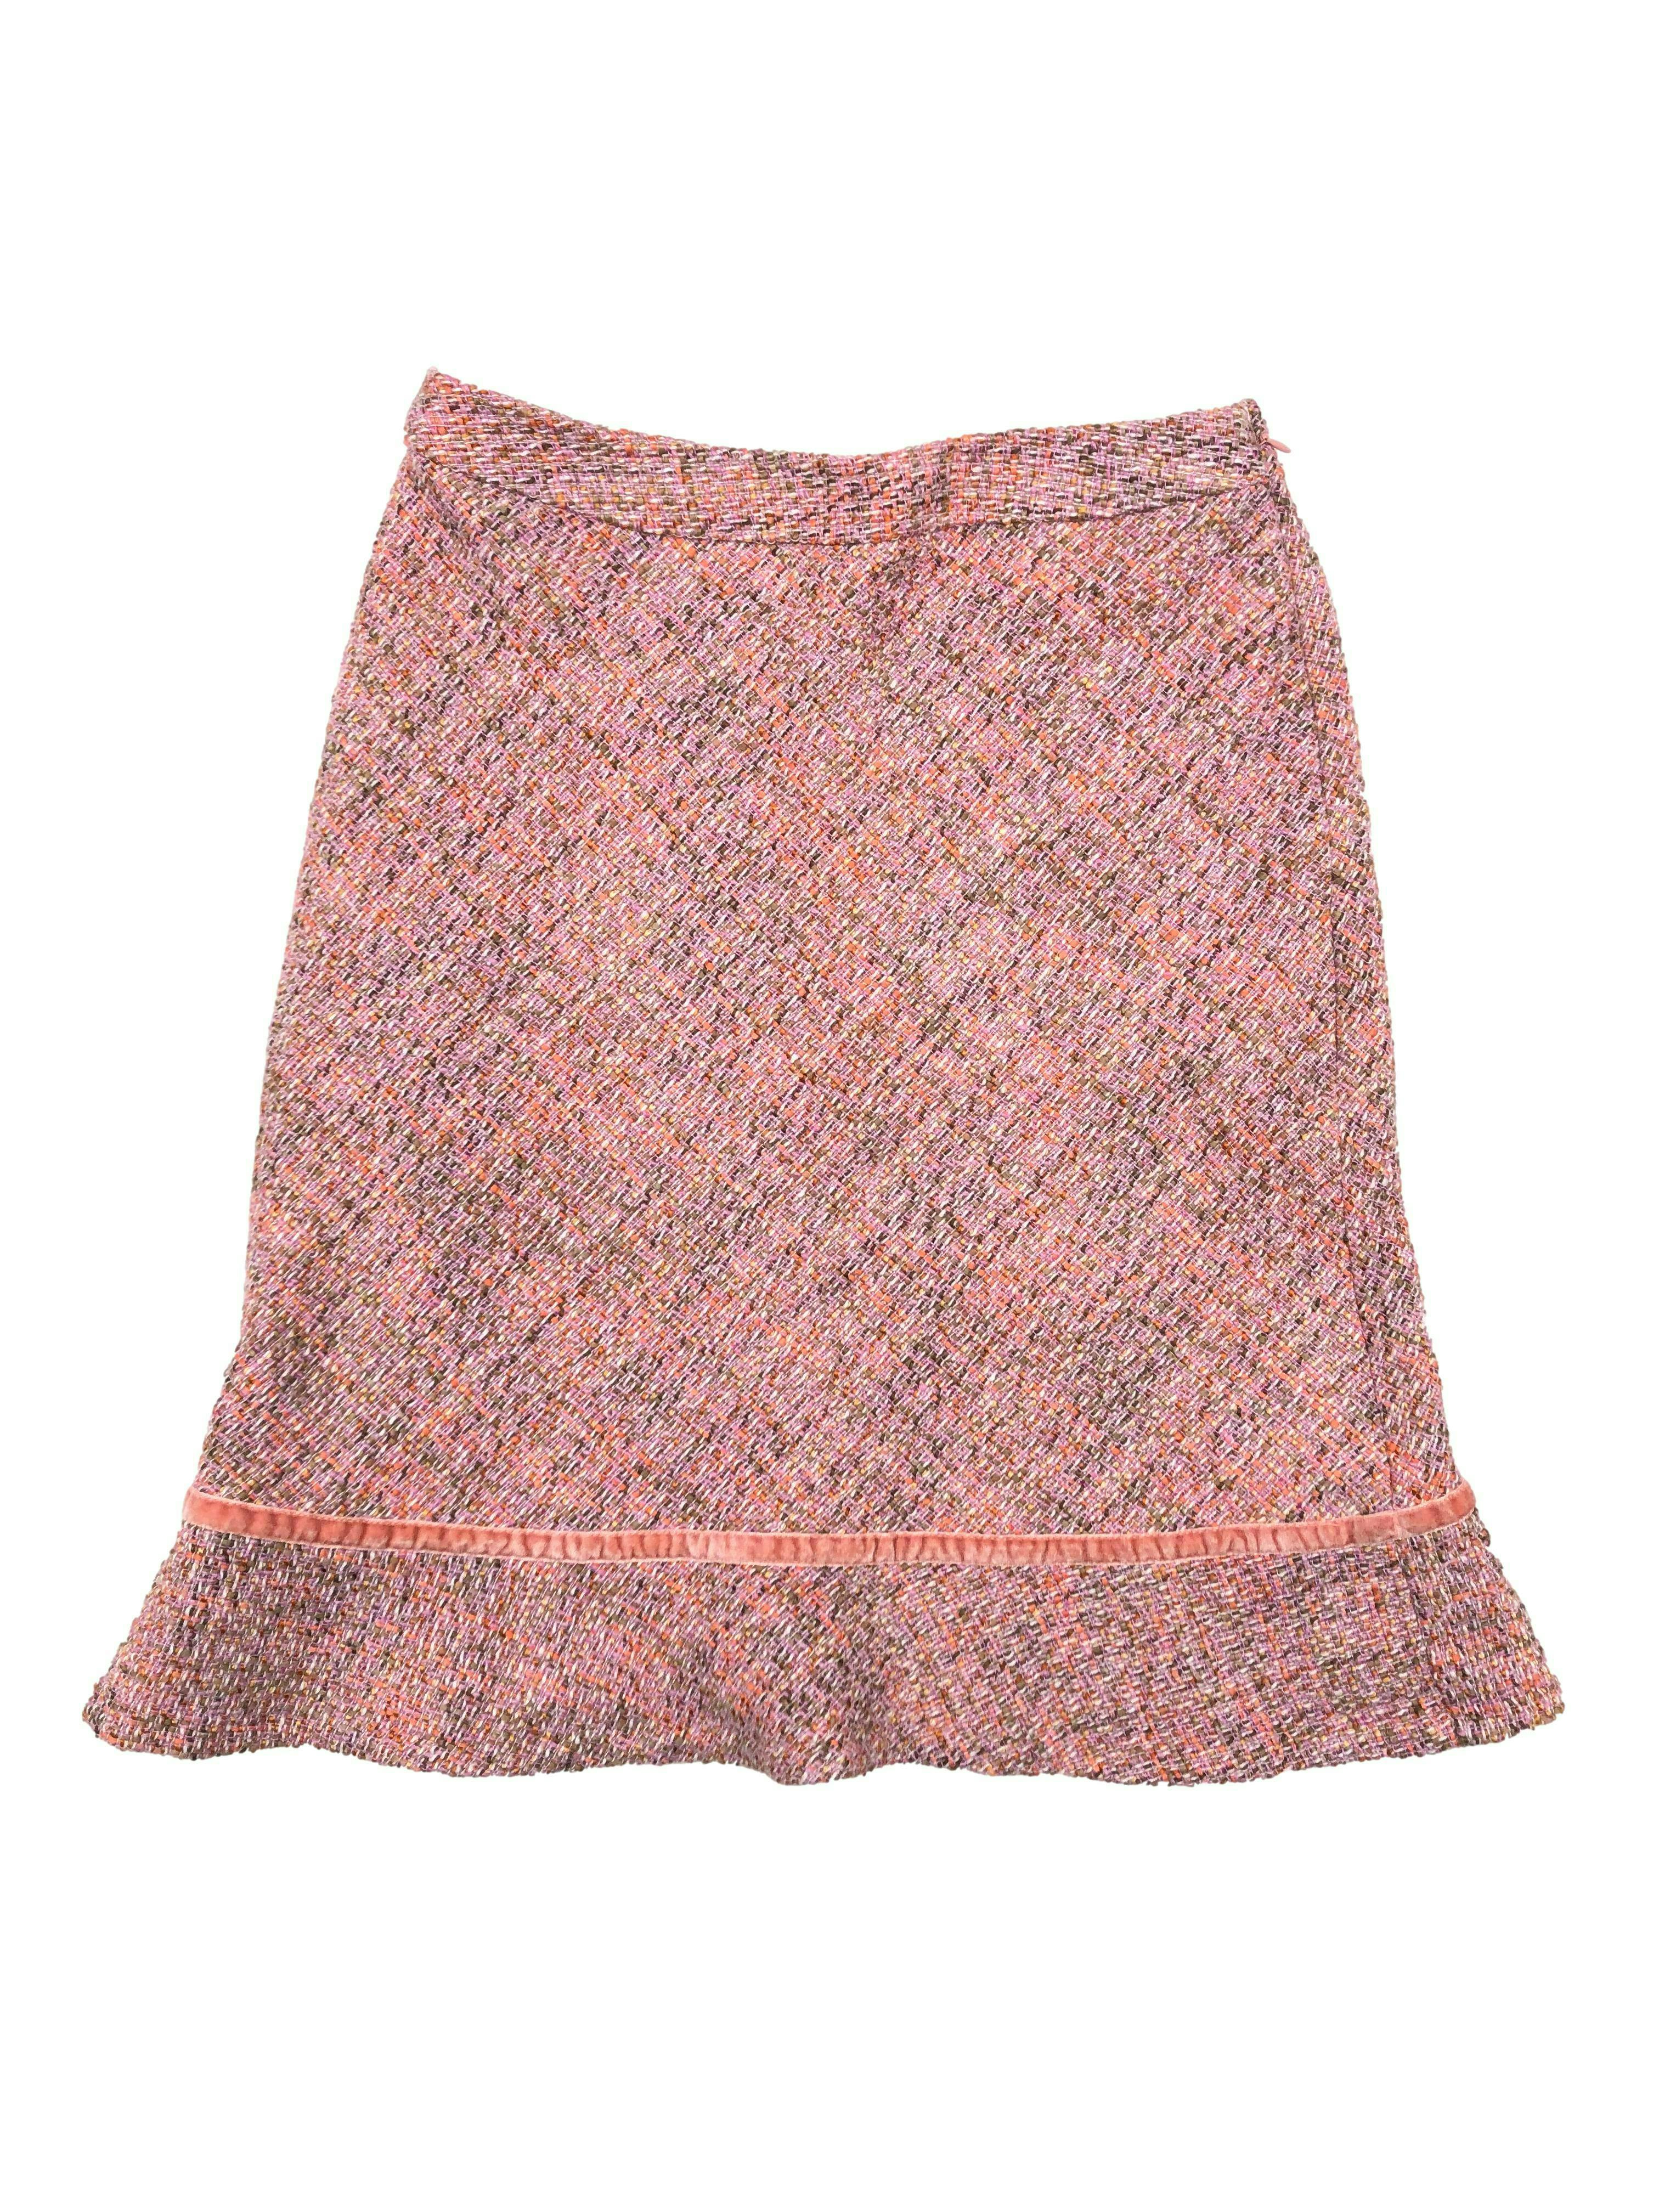 Falda GAP de tweed rosado lana blend, corte en A con forro, cinta aterciopelada en basta y cierre lateral invisible. Cintura 70cm, Largo 56cm.